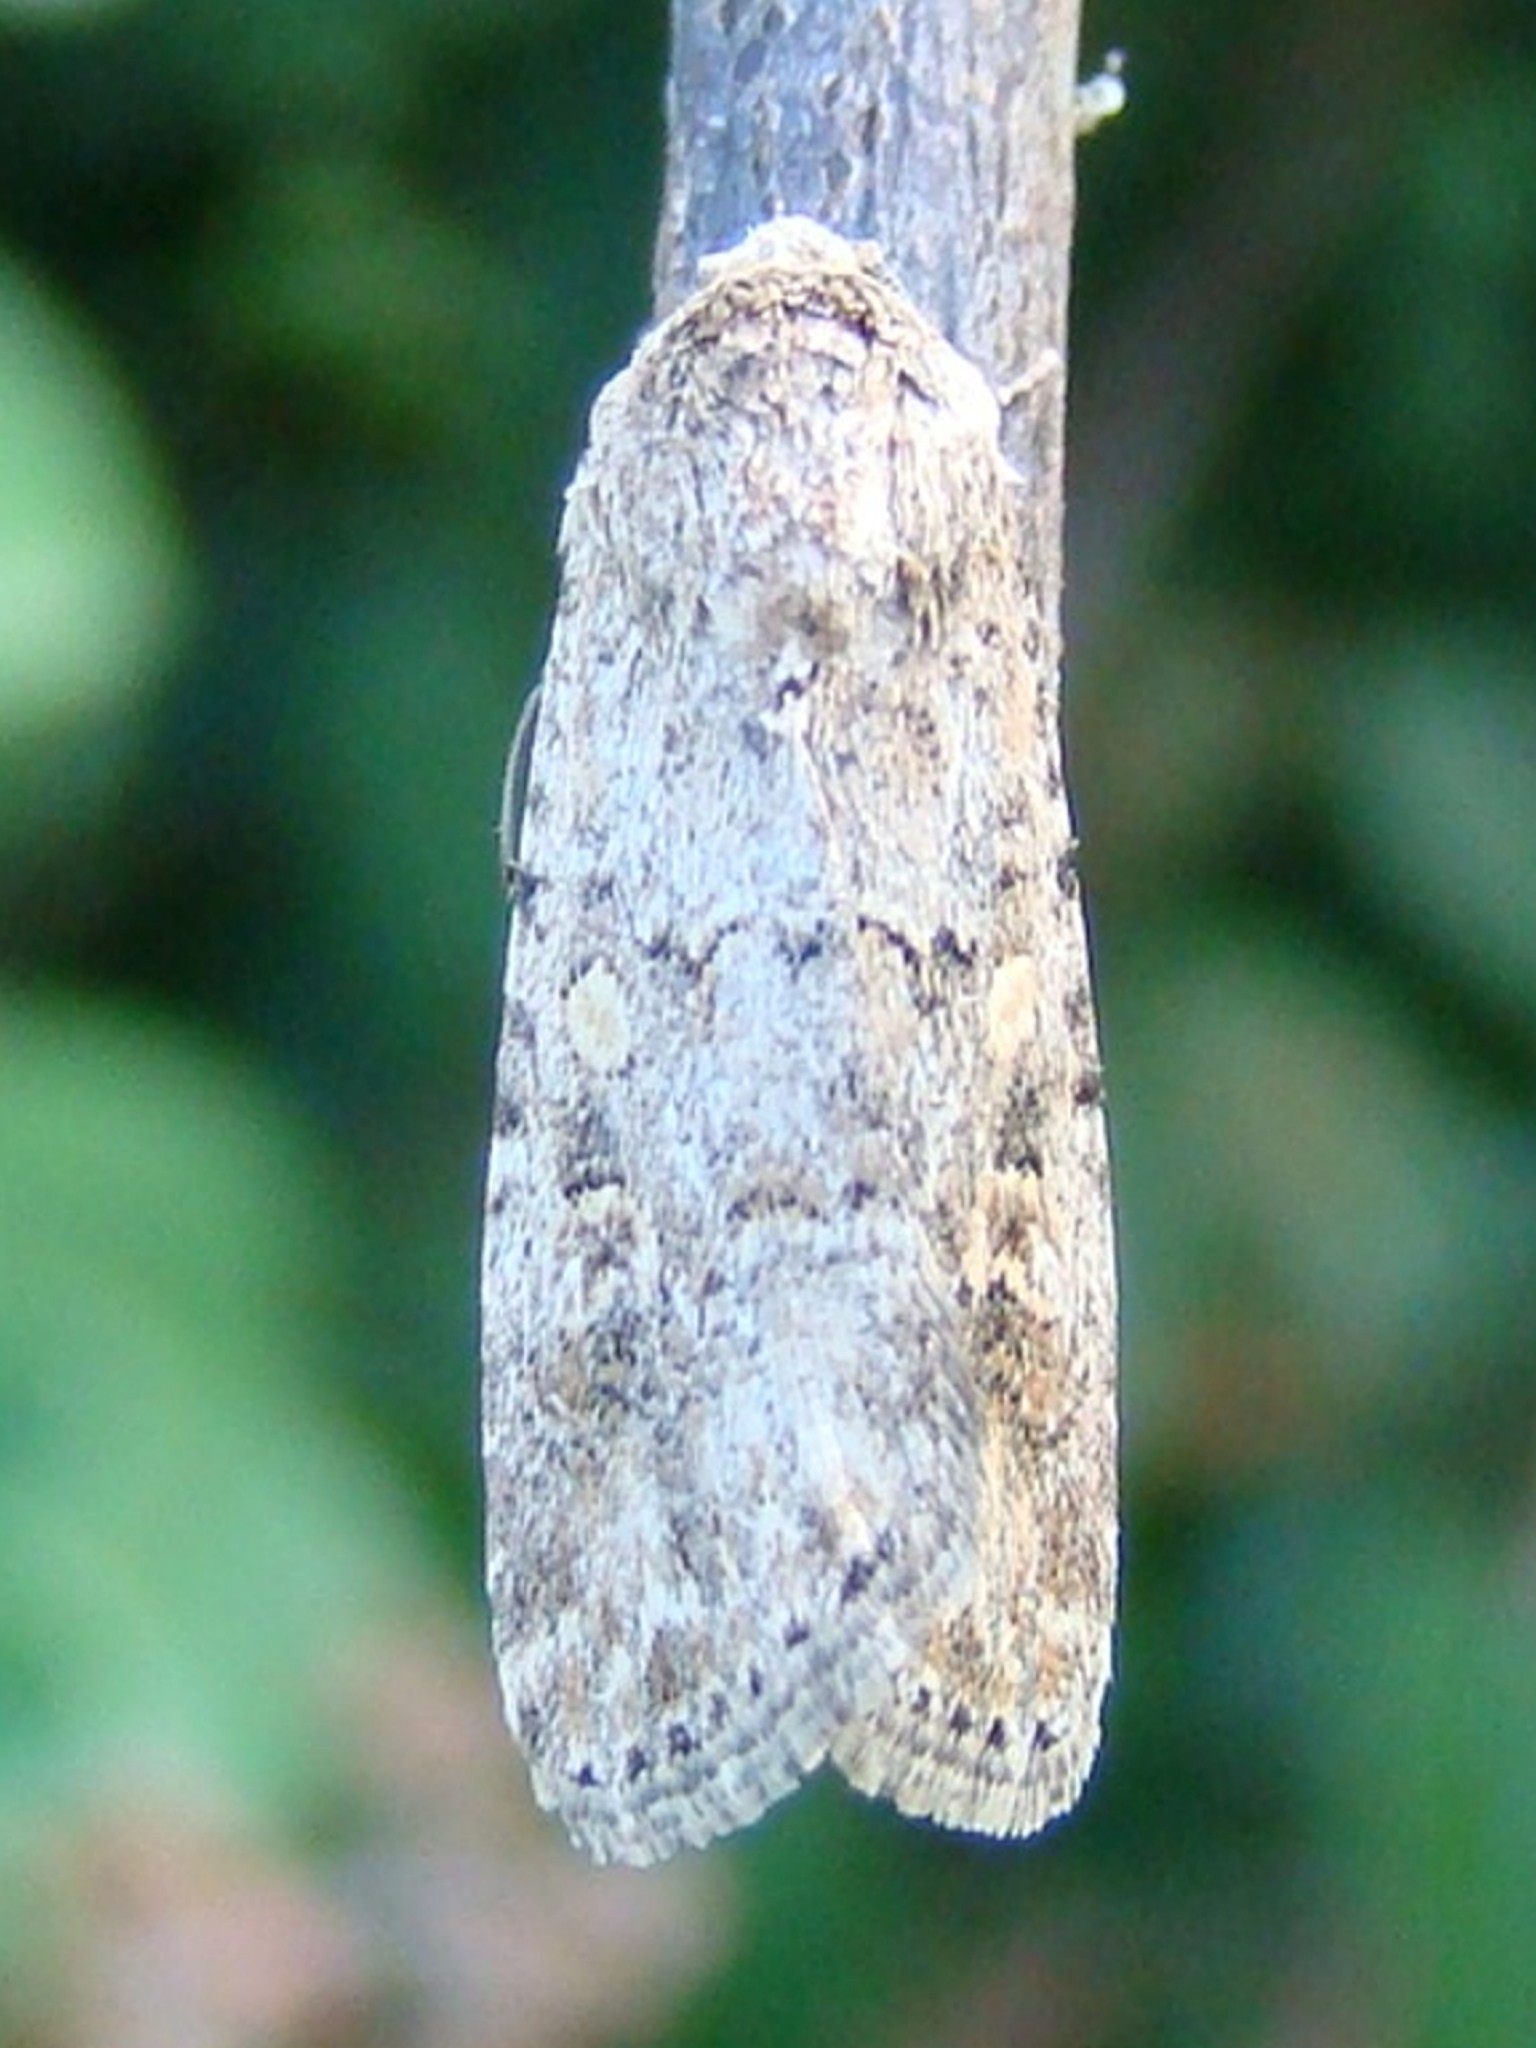 Spodoptera exigua Seys Brigitte Carvin 62 09092009